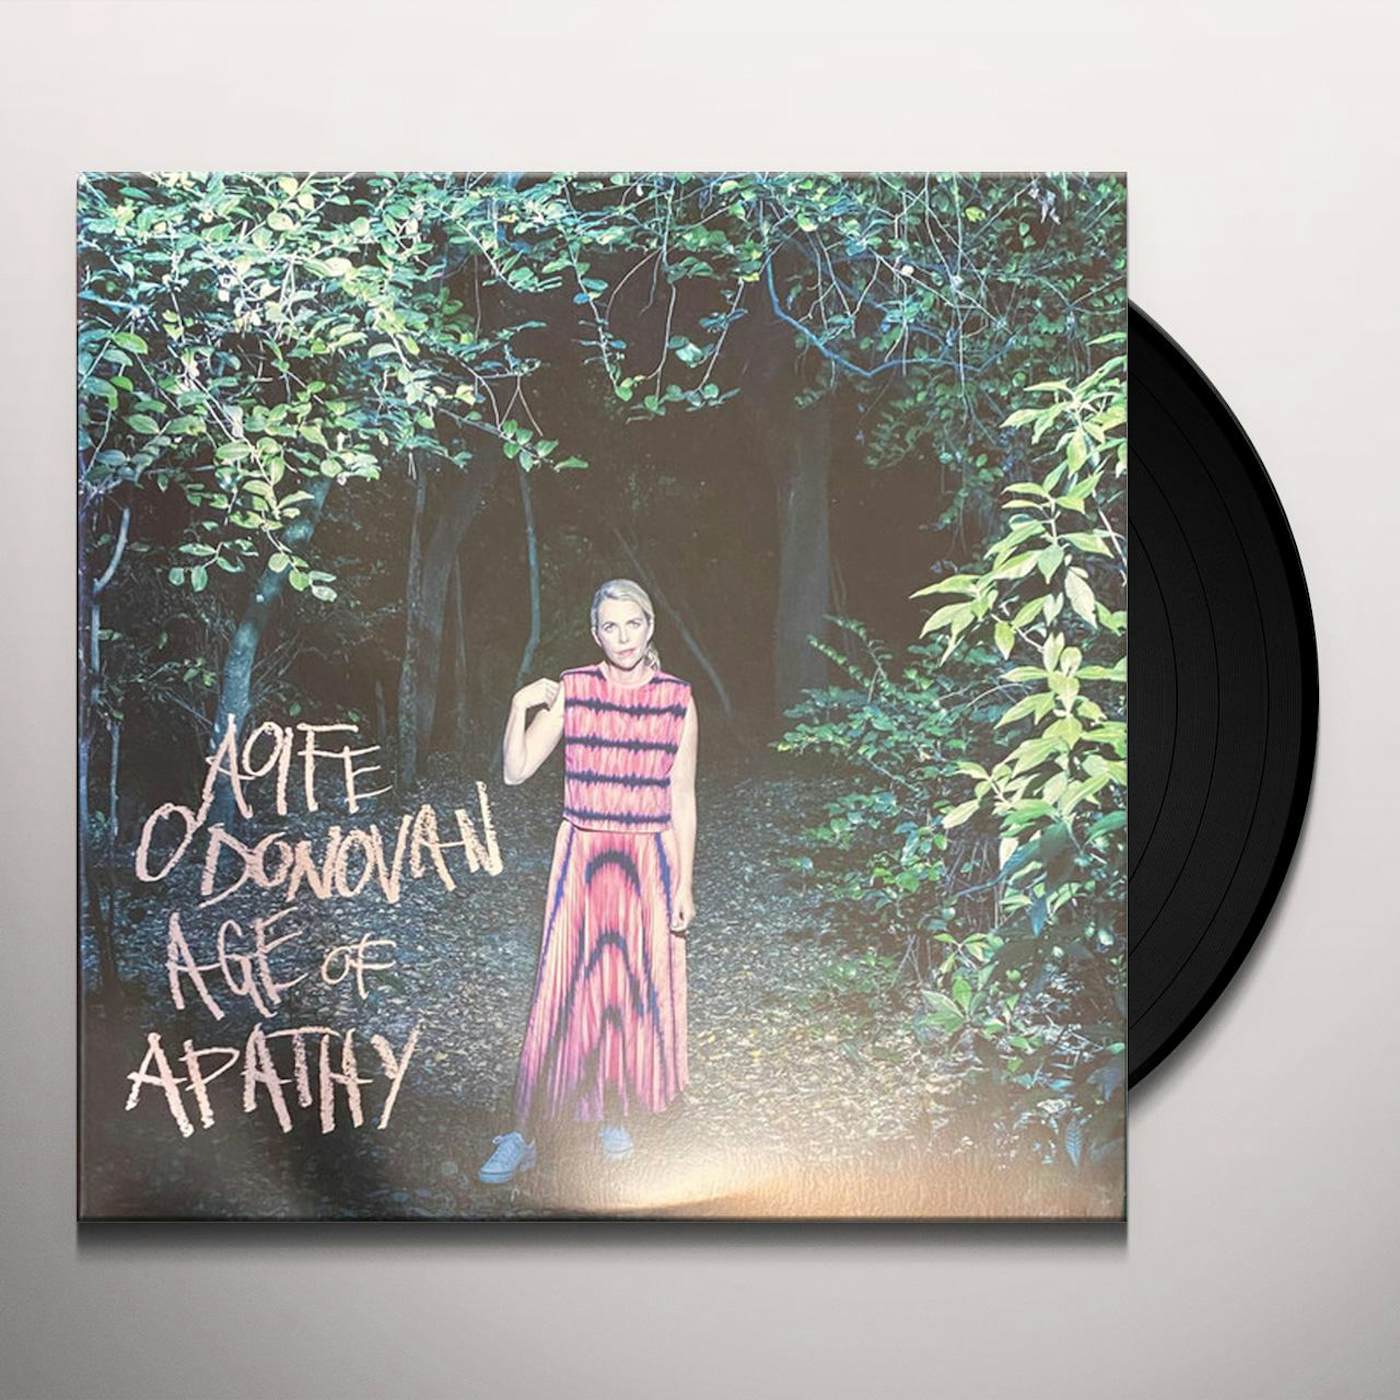 Aoife O'Donovan Age of Apathy Vinyl Record